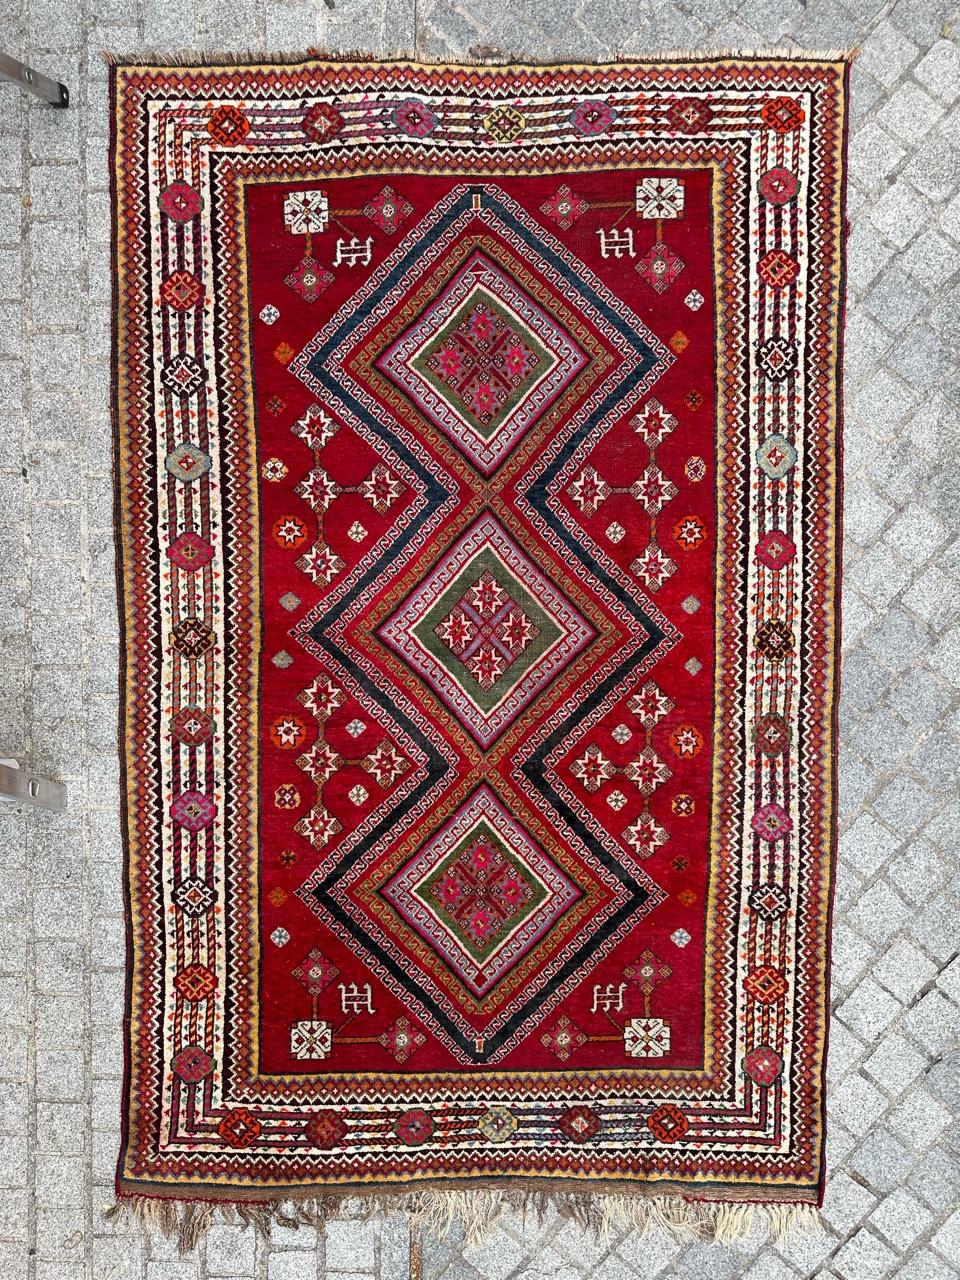 Beau tapis antique ghashghai entièrement noué à la main avec du velours de laine sur une base de laine.
Plongez dans l'histoire et l'art avec cet exquis tapis ancien du début du XXe siècle. Avec ses motifs tribaux et géométriques captivants combinés